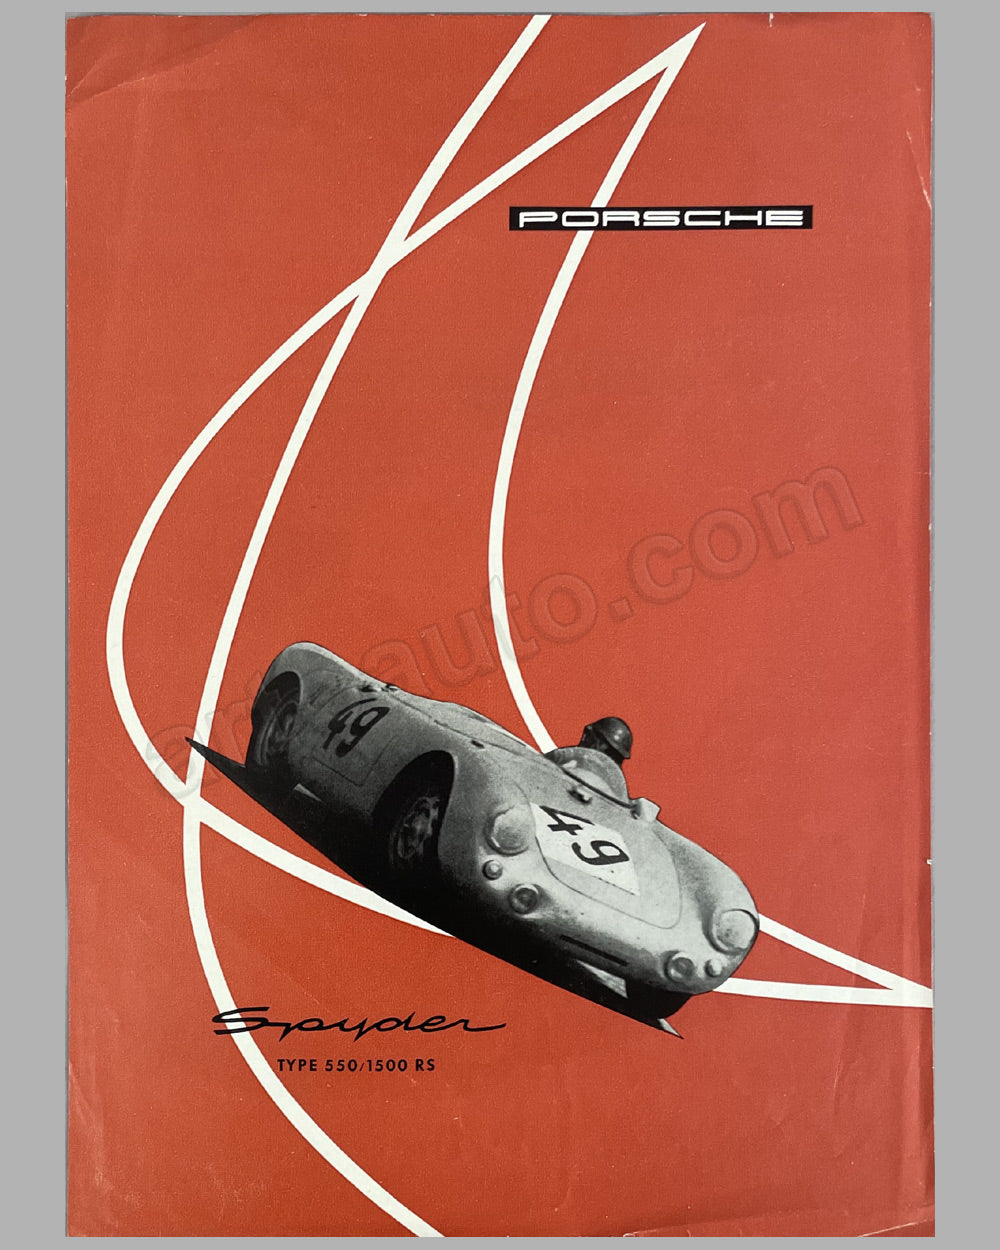 Porsche Type 550/1500 RS original factory brochure, mid 1950’s